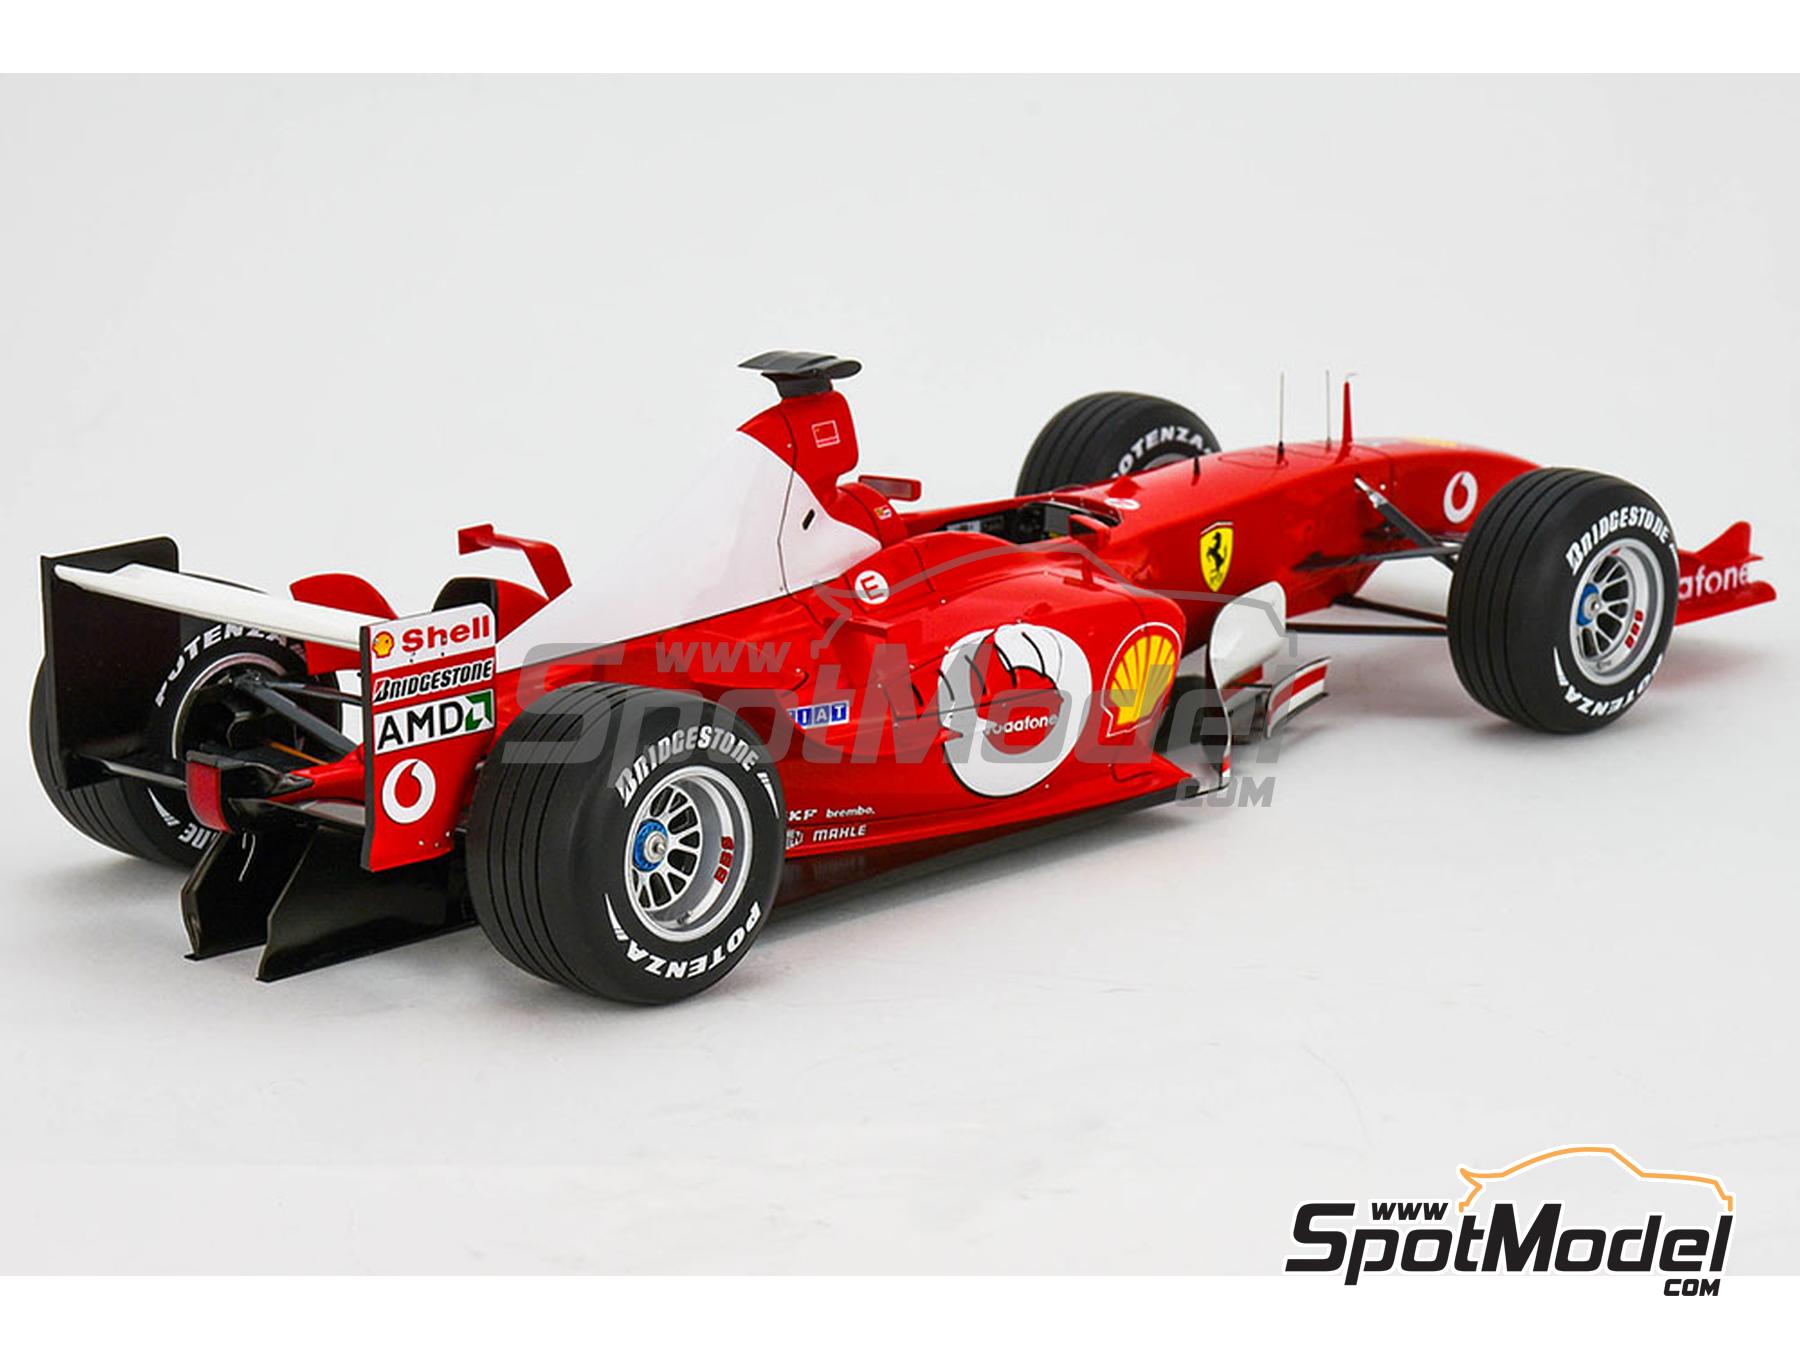 Ferrari F2003-GA Scuderia Ferrari Marlboro Team sponsored by Vodafone -  Italian Formula 1 Grand Prix 2003. Car scale model kit in 1/12 scale  manufactu